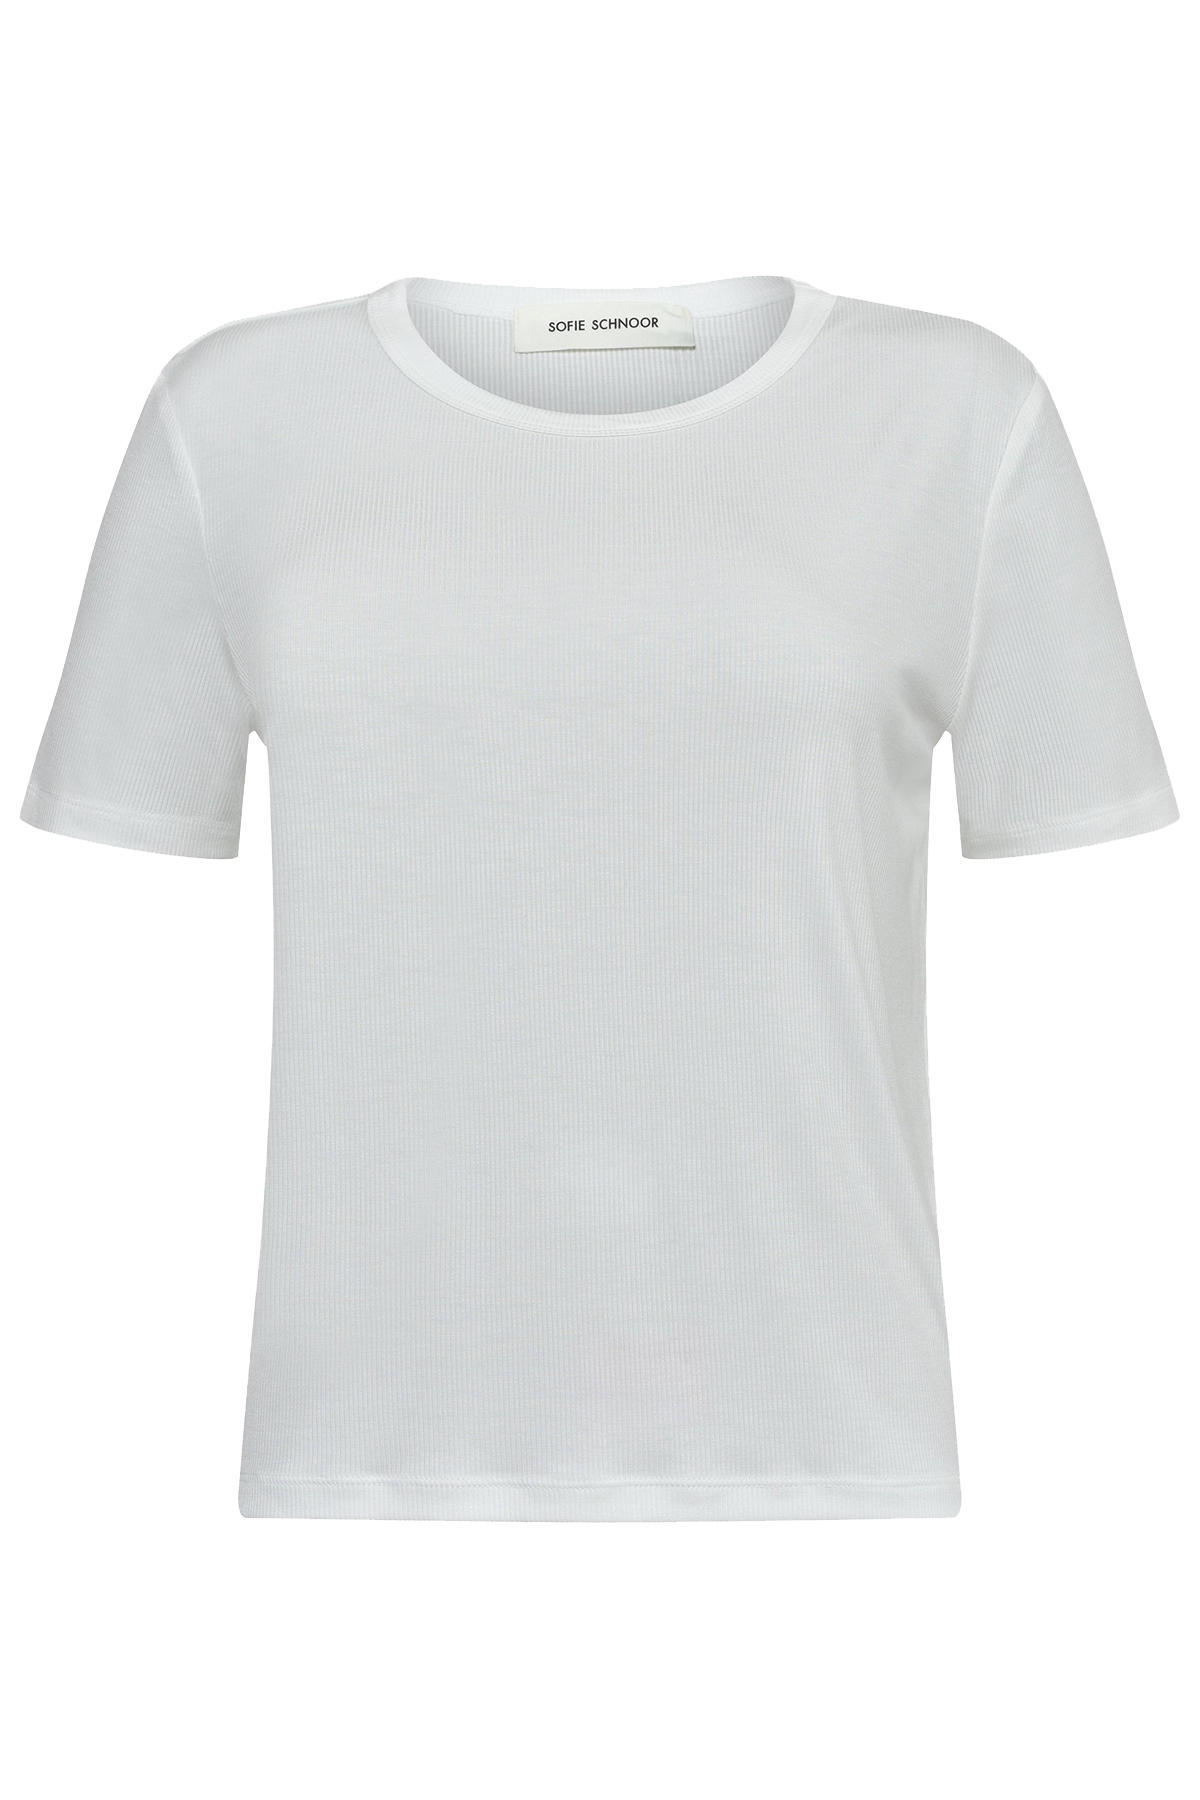 Sofie Schnoor T-shirt Snos, Farve: Hvid, Størrelse: XL, Dame